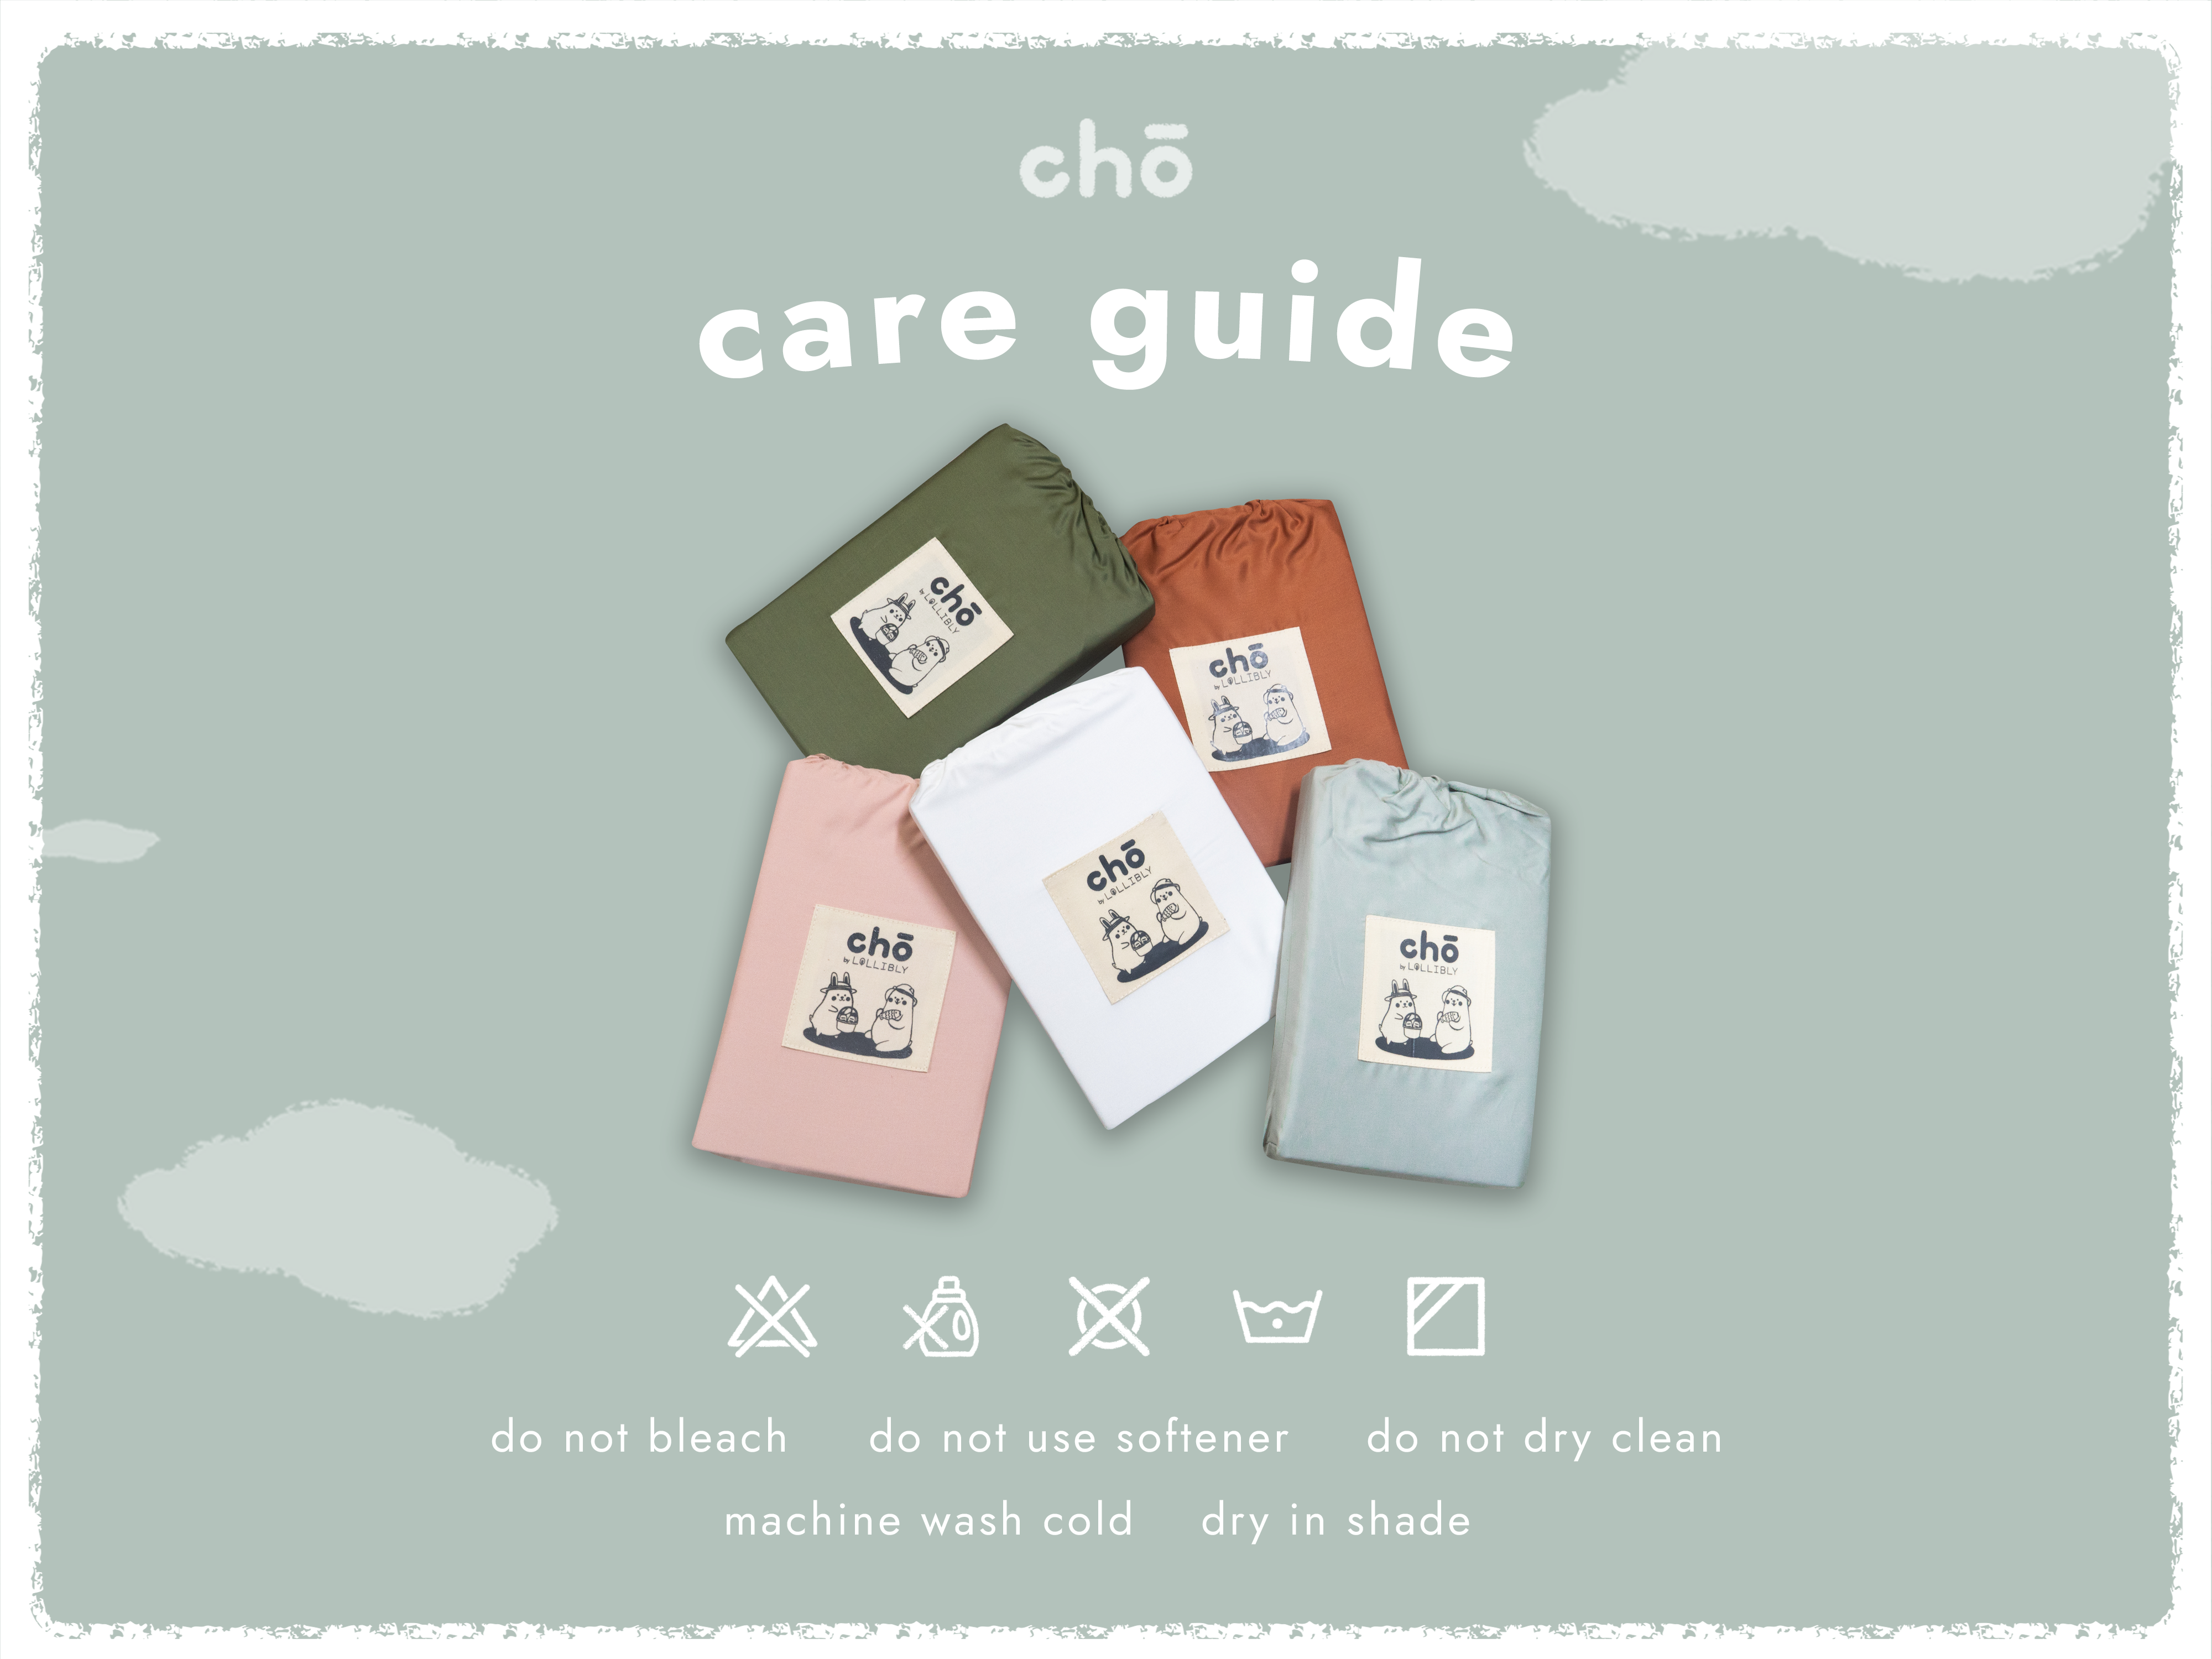 Cho Bamboo Baby Cot Sheet (Bundle of 2)